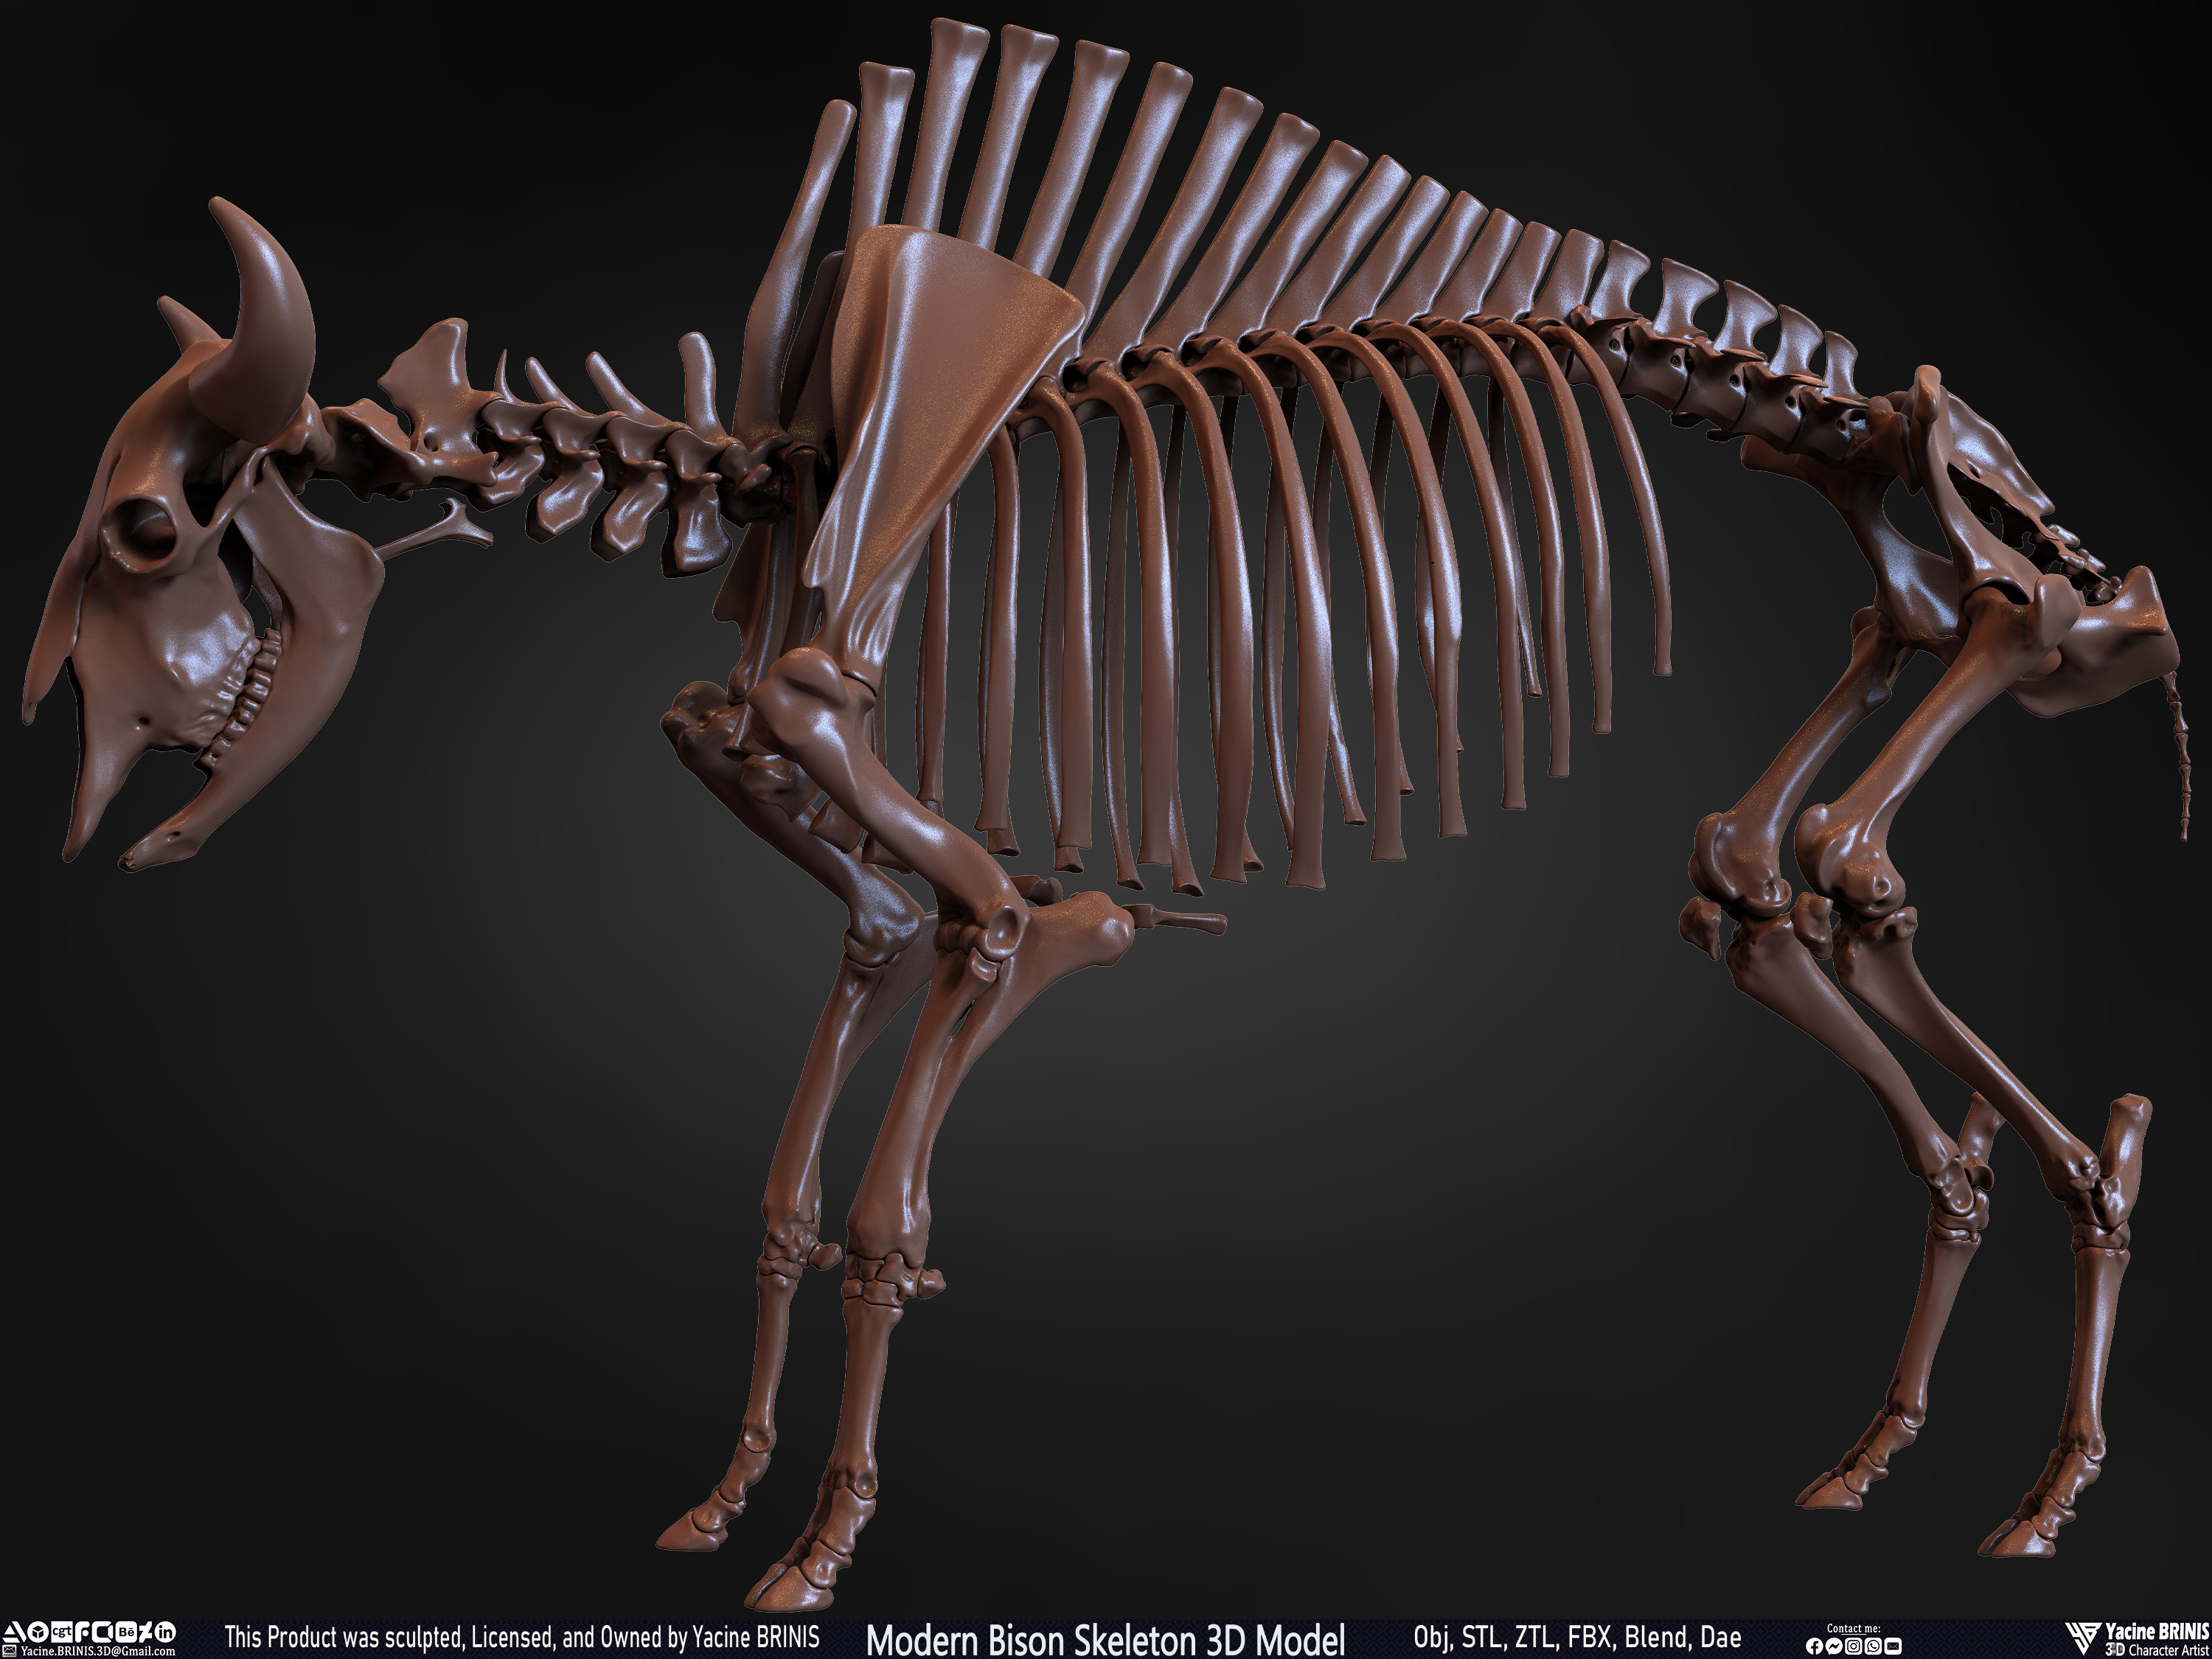 Modern Bison Skeleton 3D Model Sculpted by Yacine BRINIS Set 017